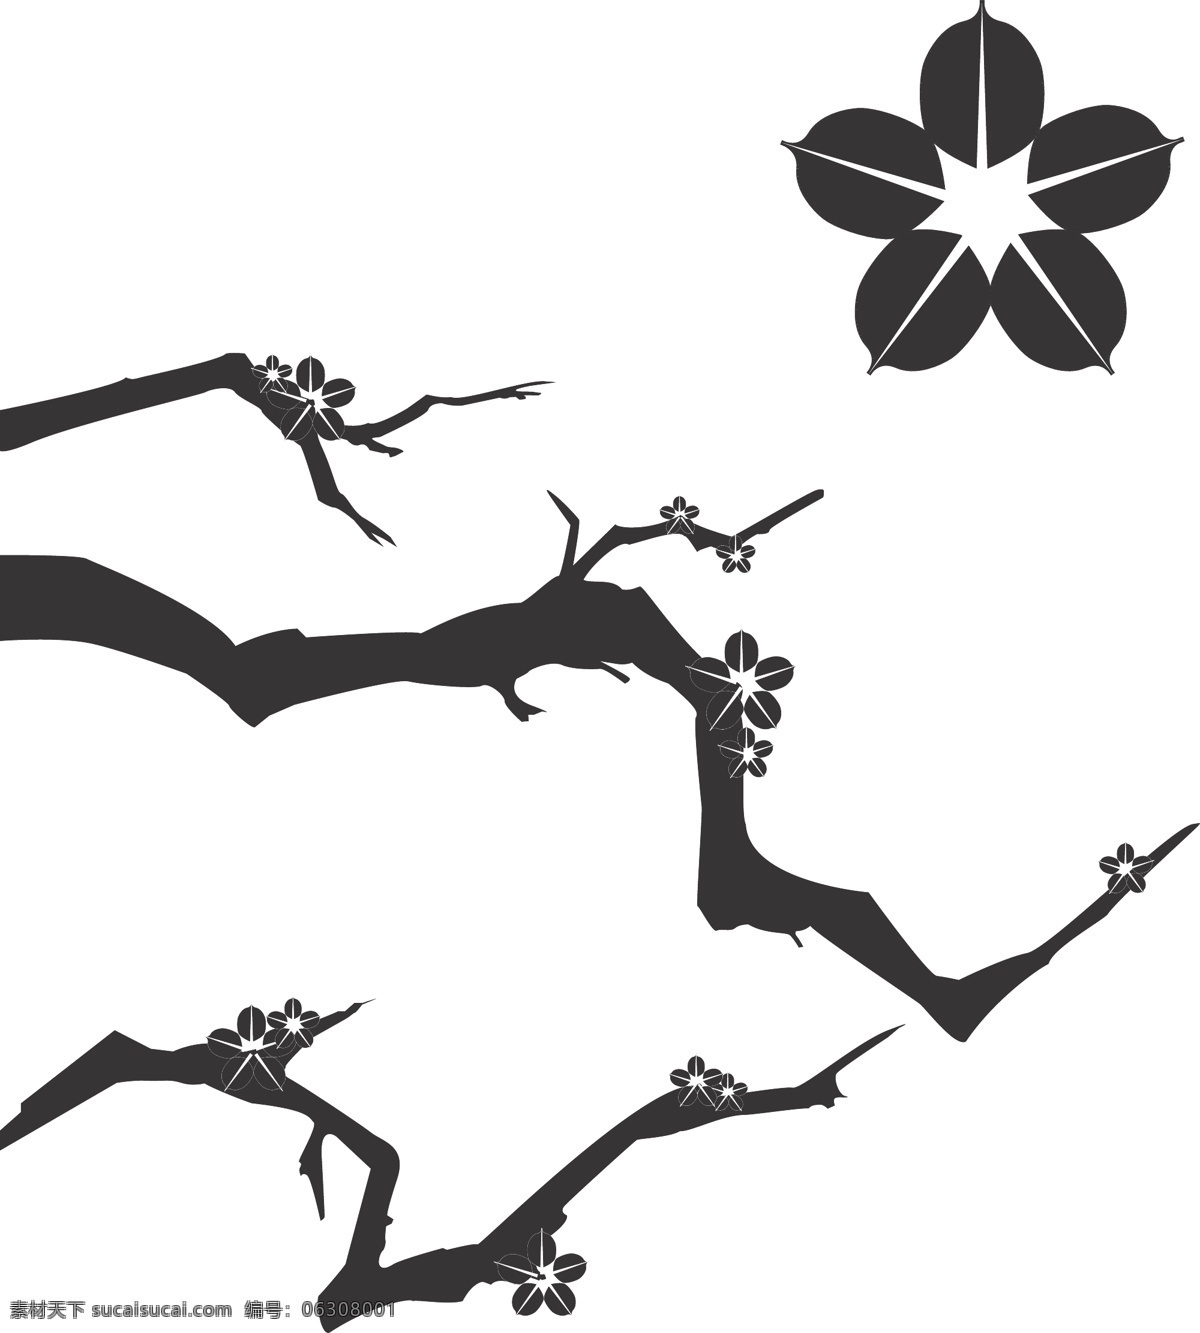 梅花 树枝 剪影 矢量图 ai矢量 花朵 素材免费下载 植物剪影 梅花剪影 黑白花枝 其他矢量图